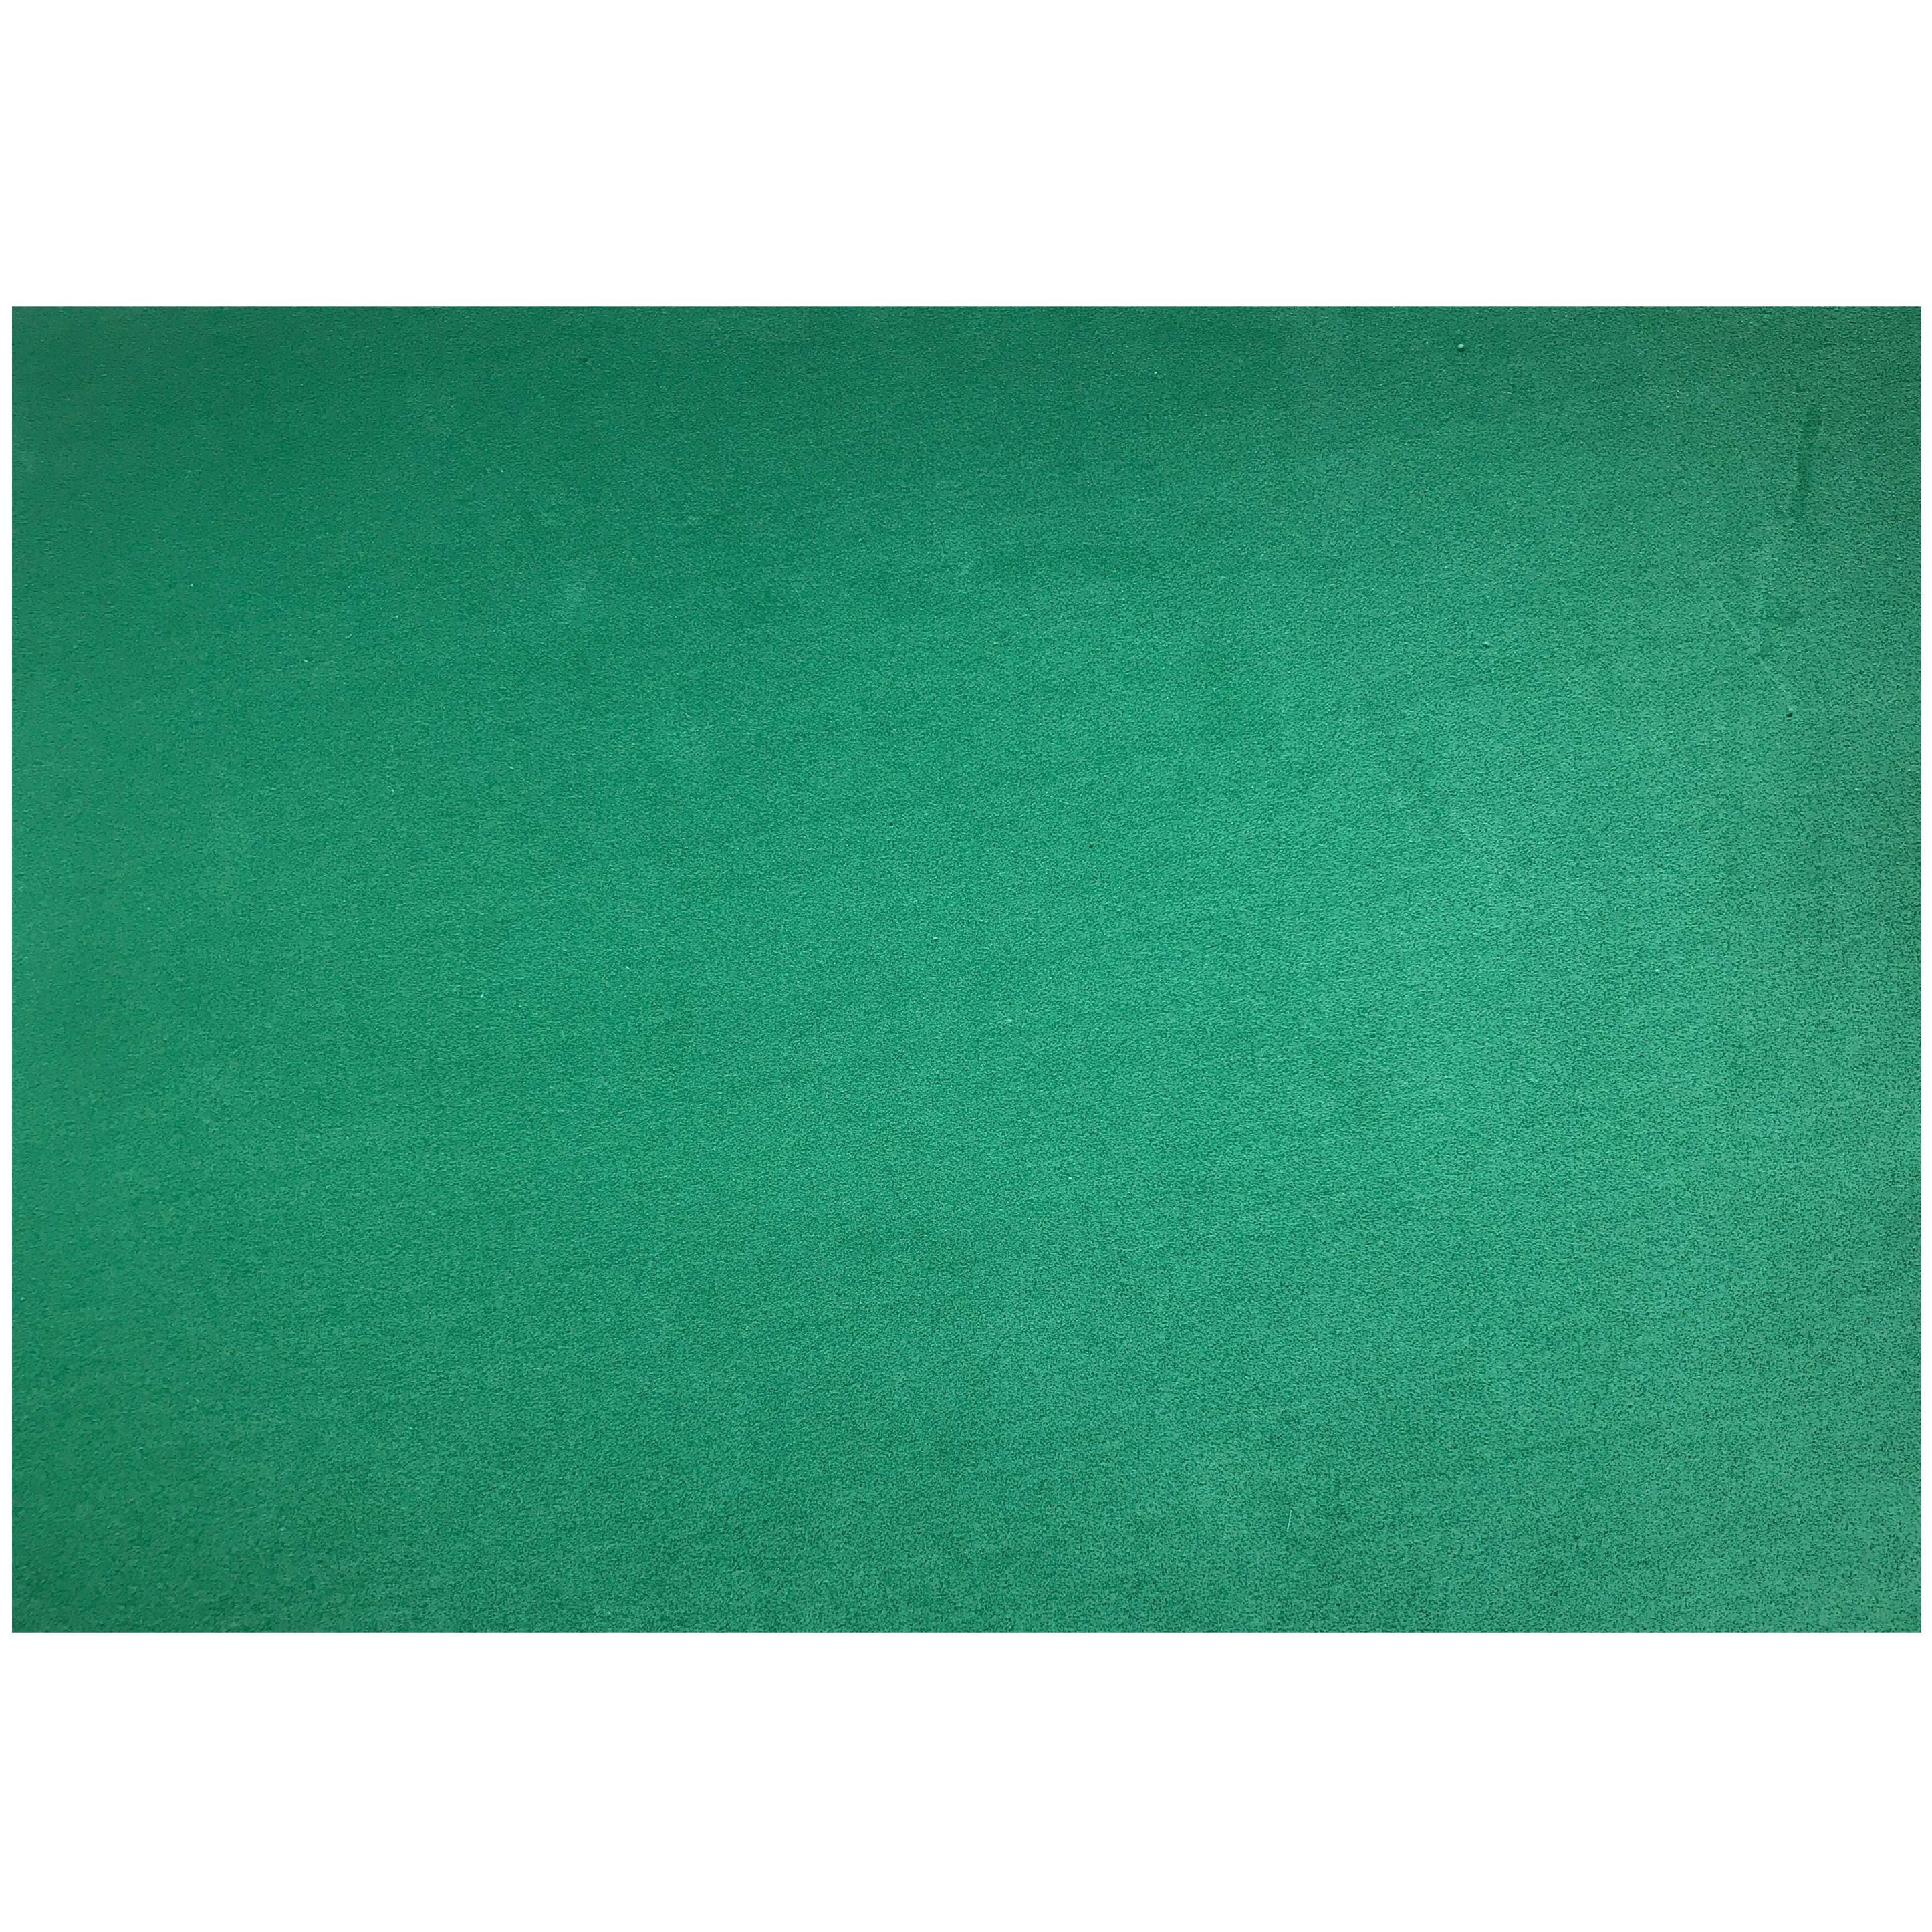 Crepla knutsel foam rubber groen 20 x 30 cm